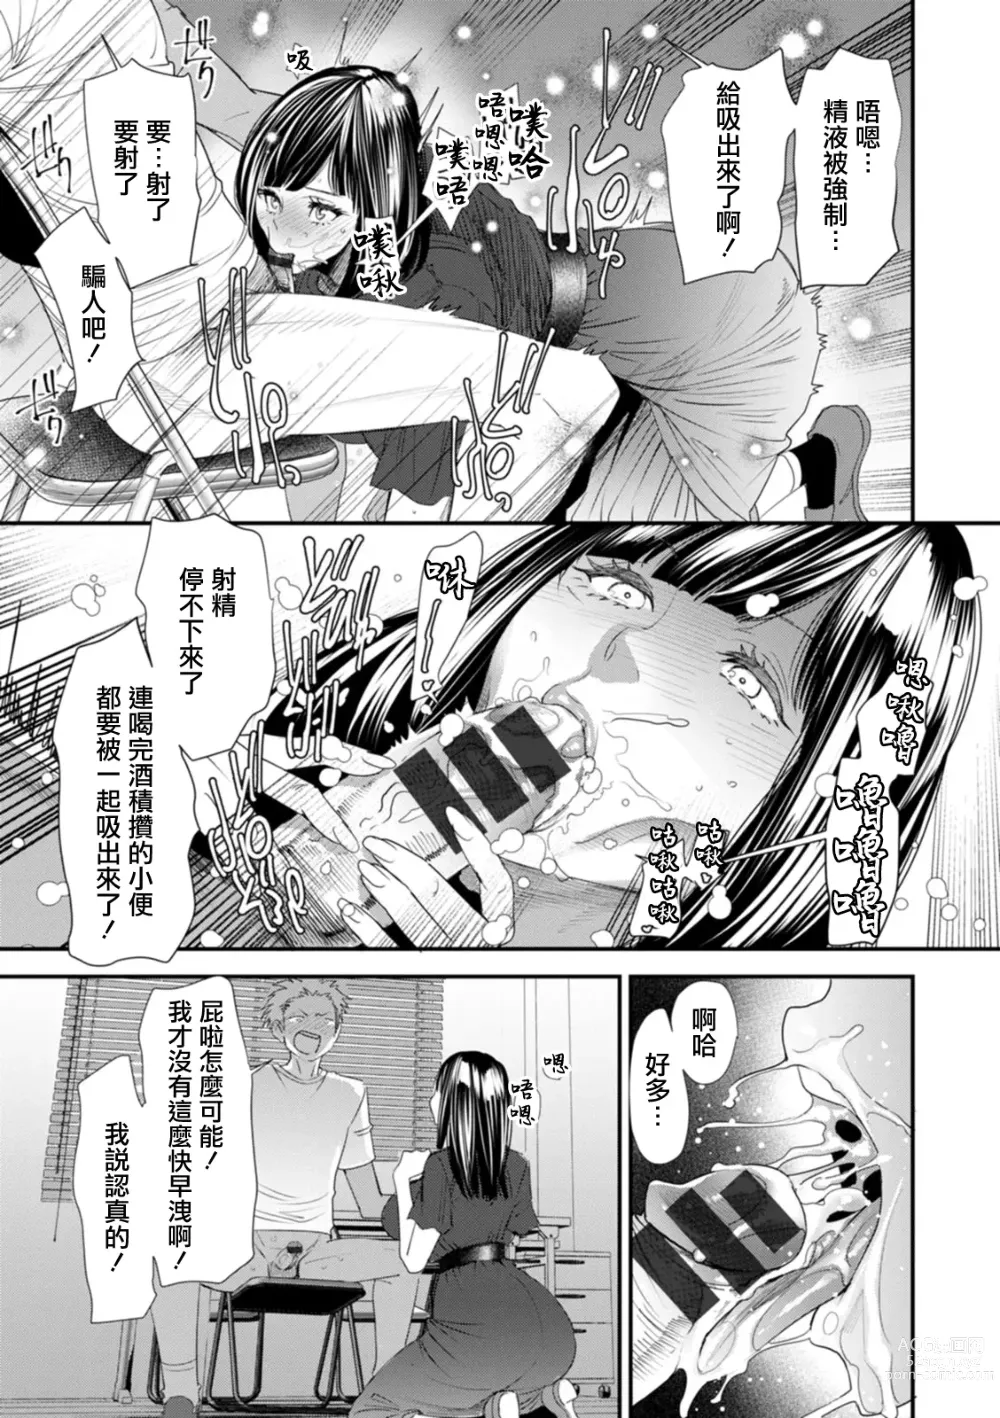 Page 13 of manga Inma Joshi Daisei no Yuuutsu Ch. 1 Uwasa no Joshidaisei Takemi  Yuki